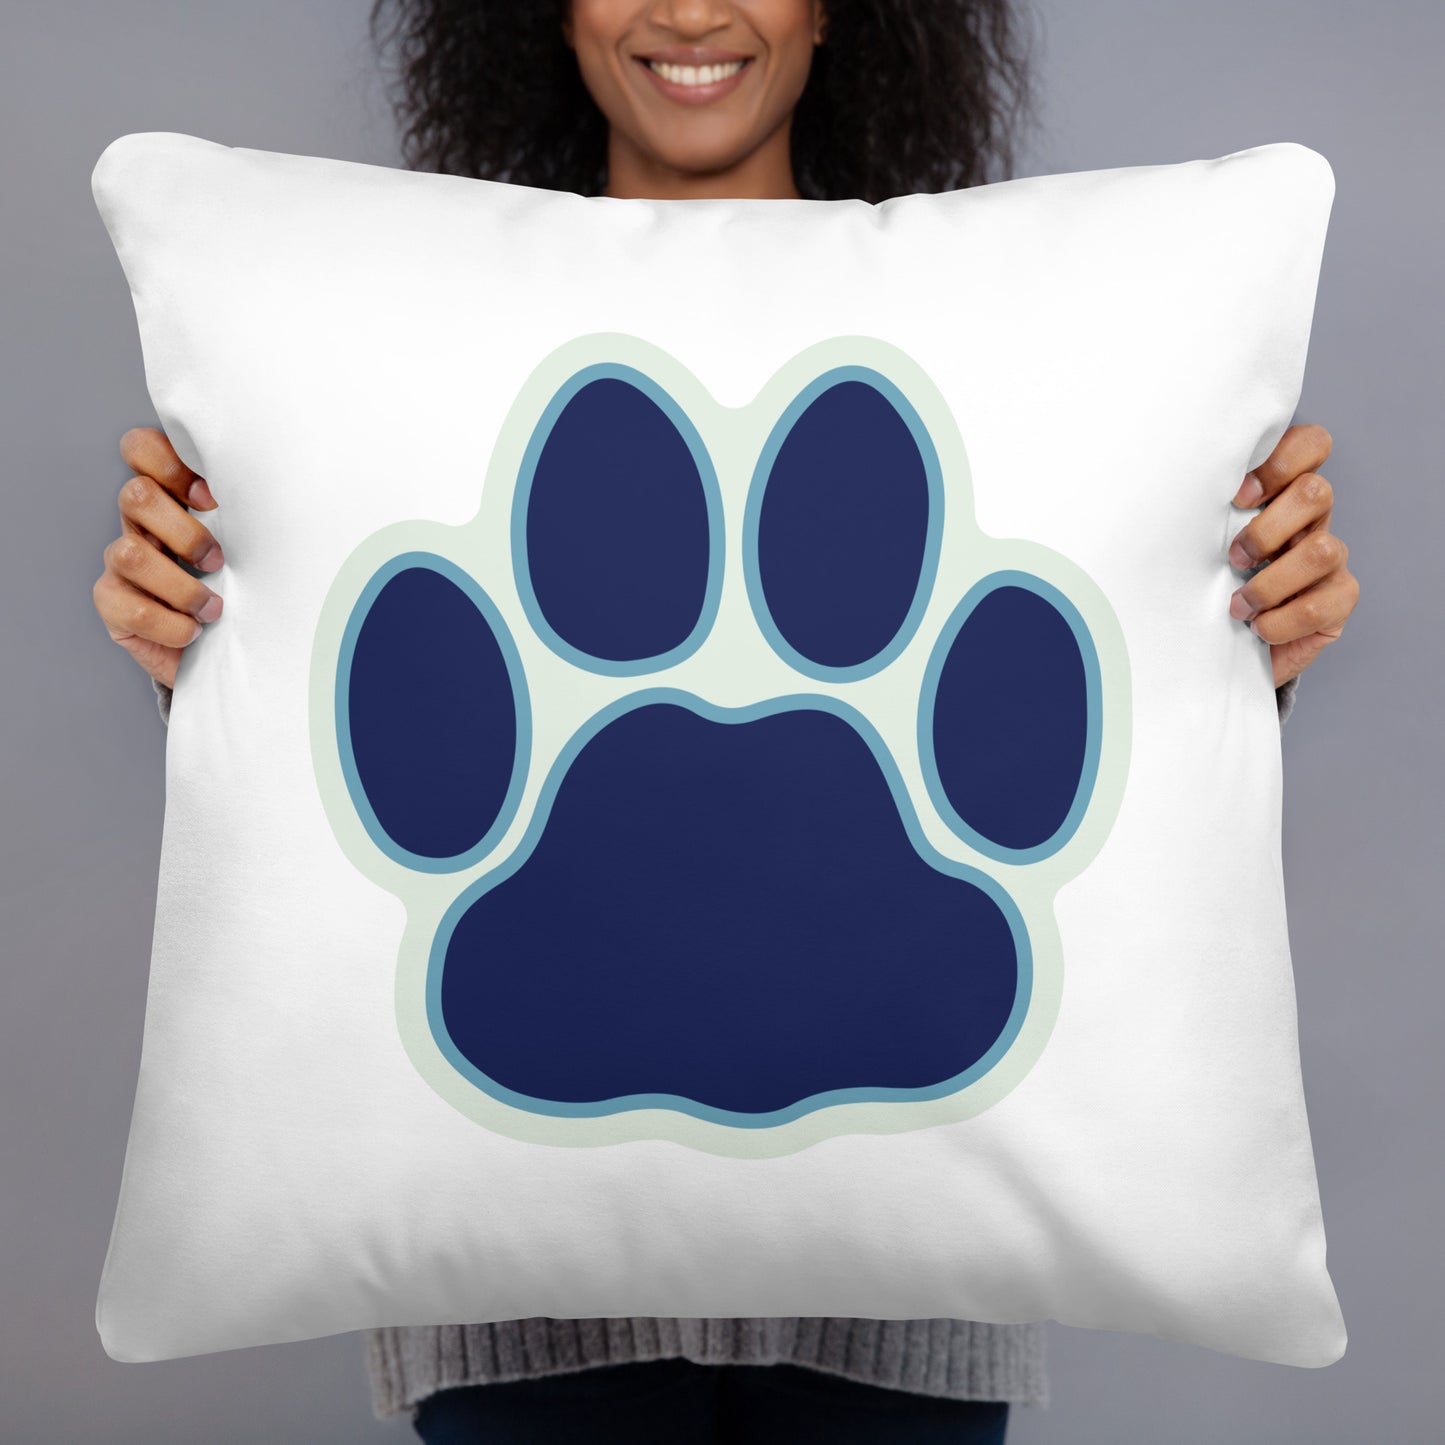 Mountain Lion Pillow